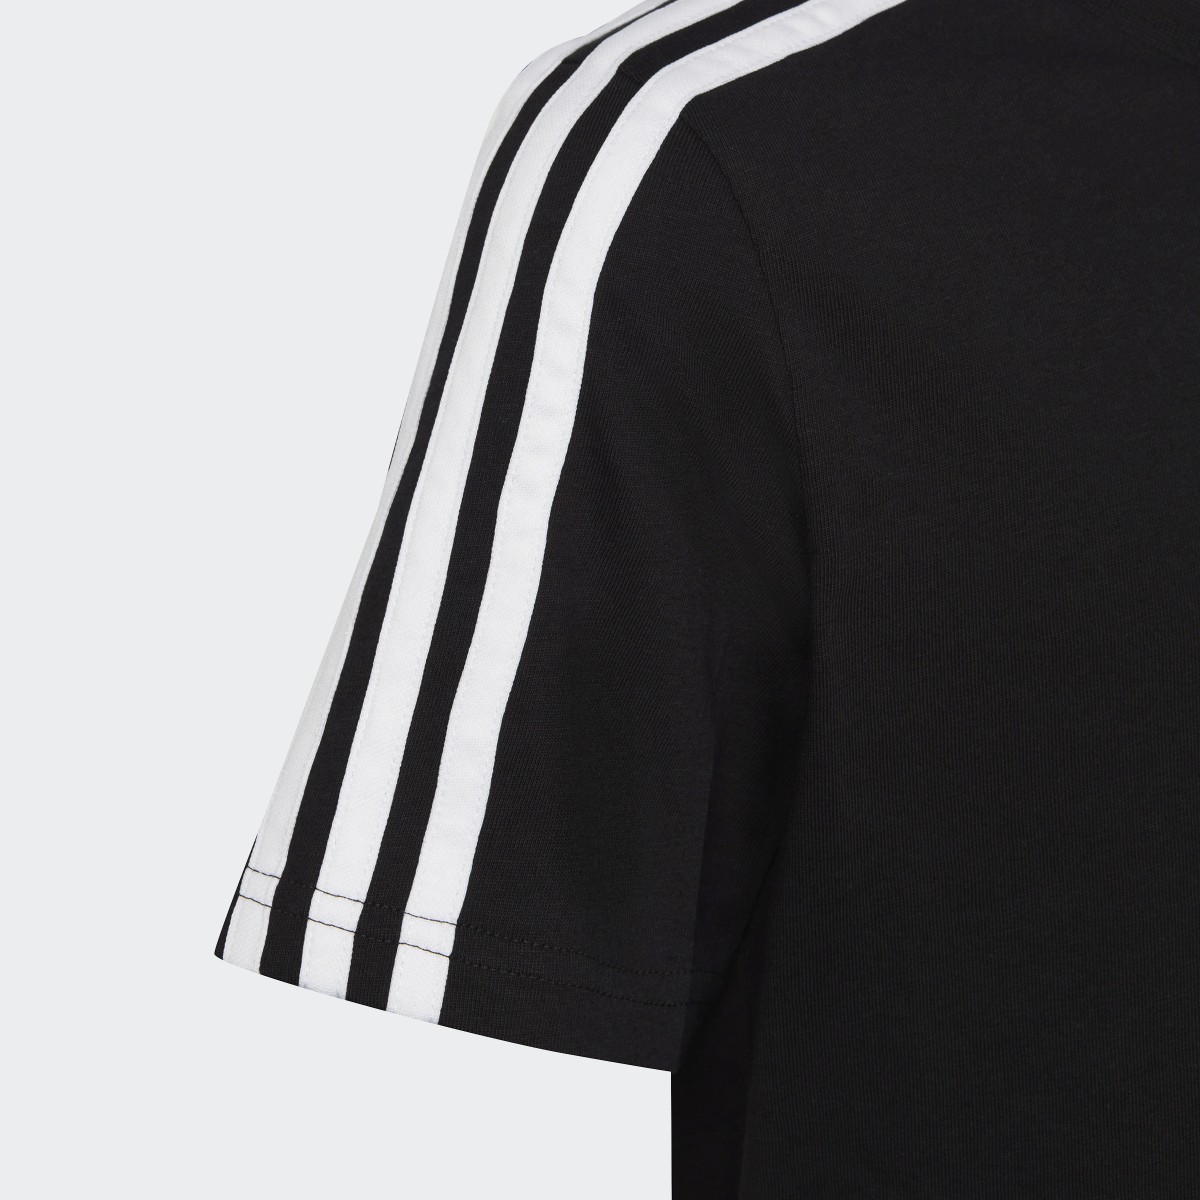 Adidas Essentials 3-Stripes Cotton Tişört. 6